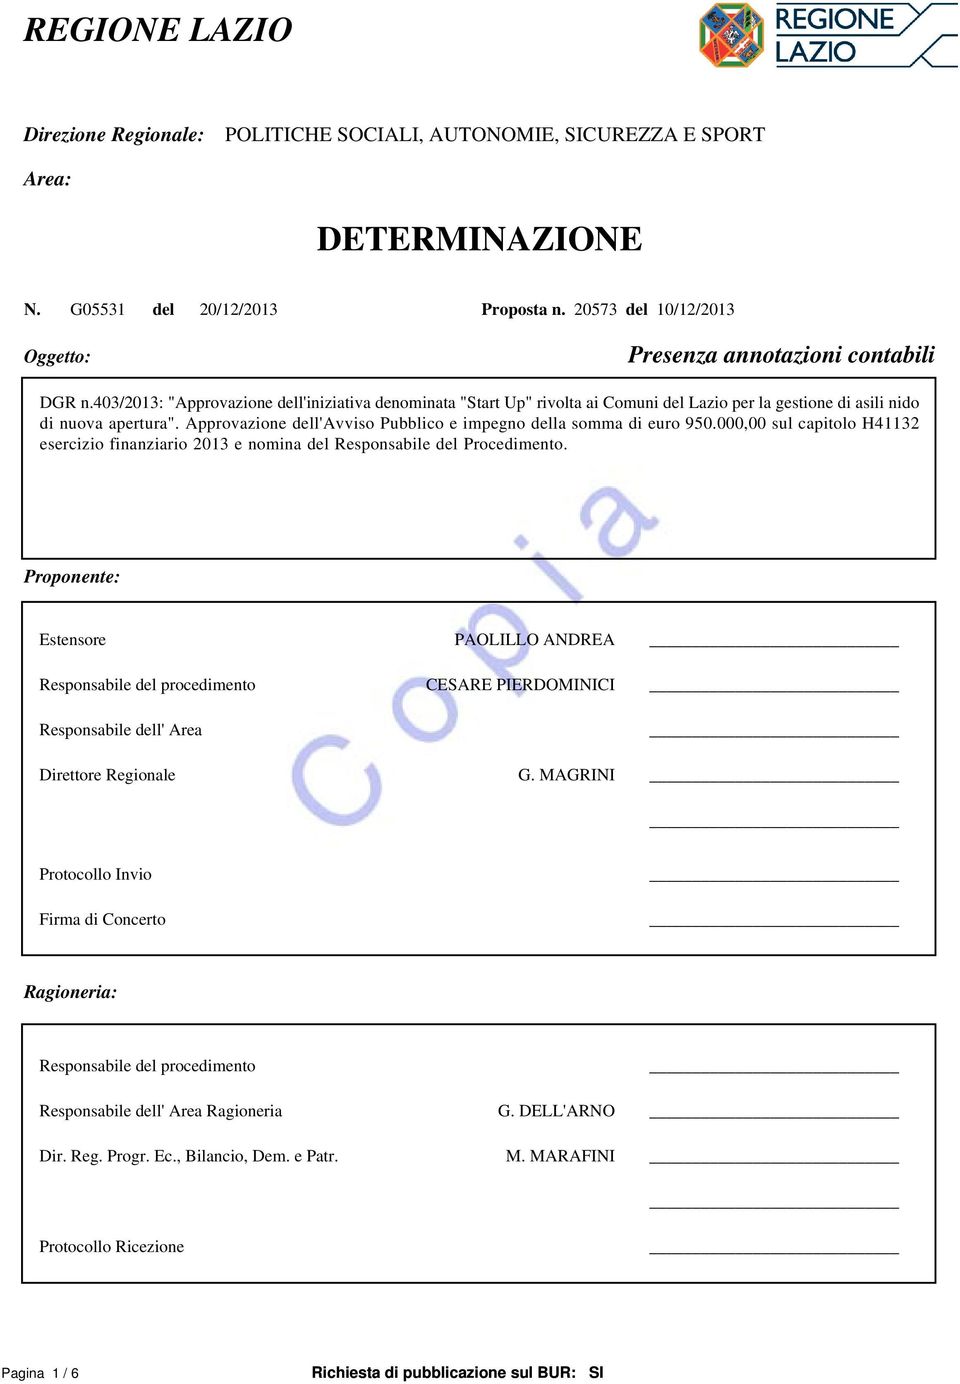 403/2013: "Approvazione dell'iniziativa denominata "Start Up" rivolta ai Comuni del Lazio per la gestione di asili nido di nuova apertura".